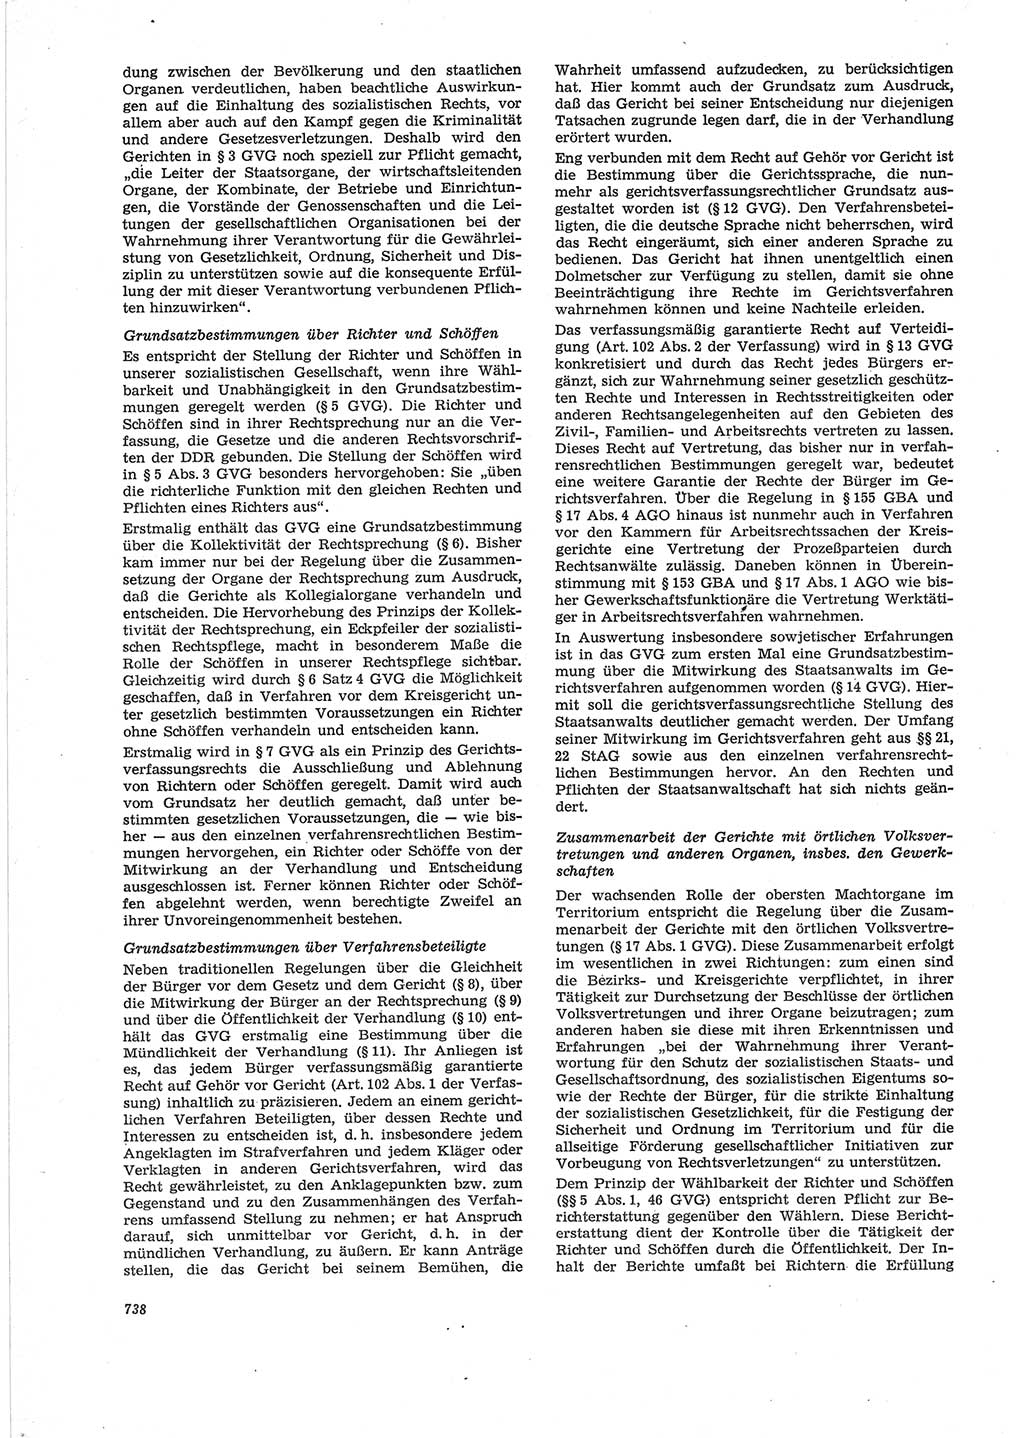 Neue Justiz (NJ), Zeitschrift für Recht und Rechtswissenschaft [Deutsche Demokratische Republik (DDR)], 28. Jahrgang 1974, Seite 738 (NJ DDR 1974, S. 738)